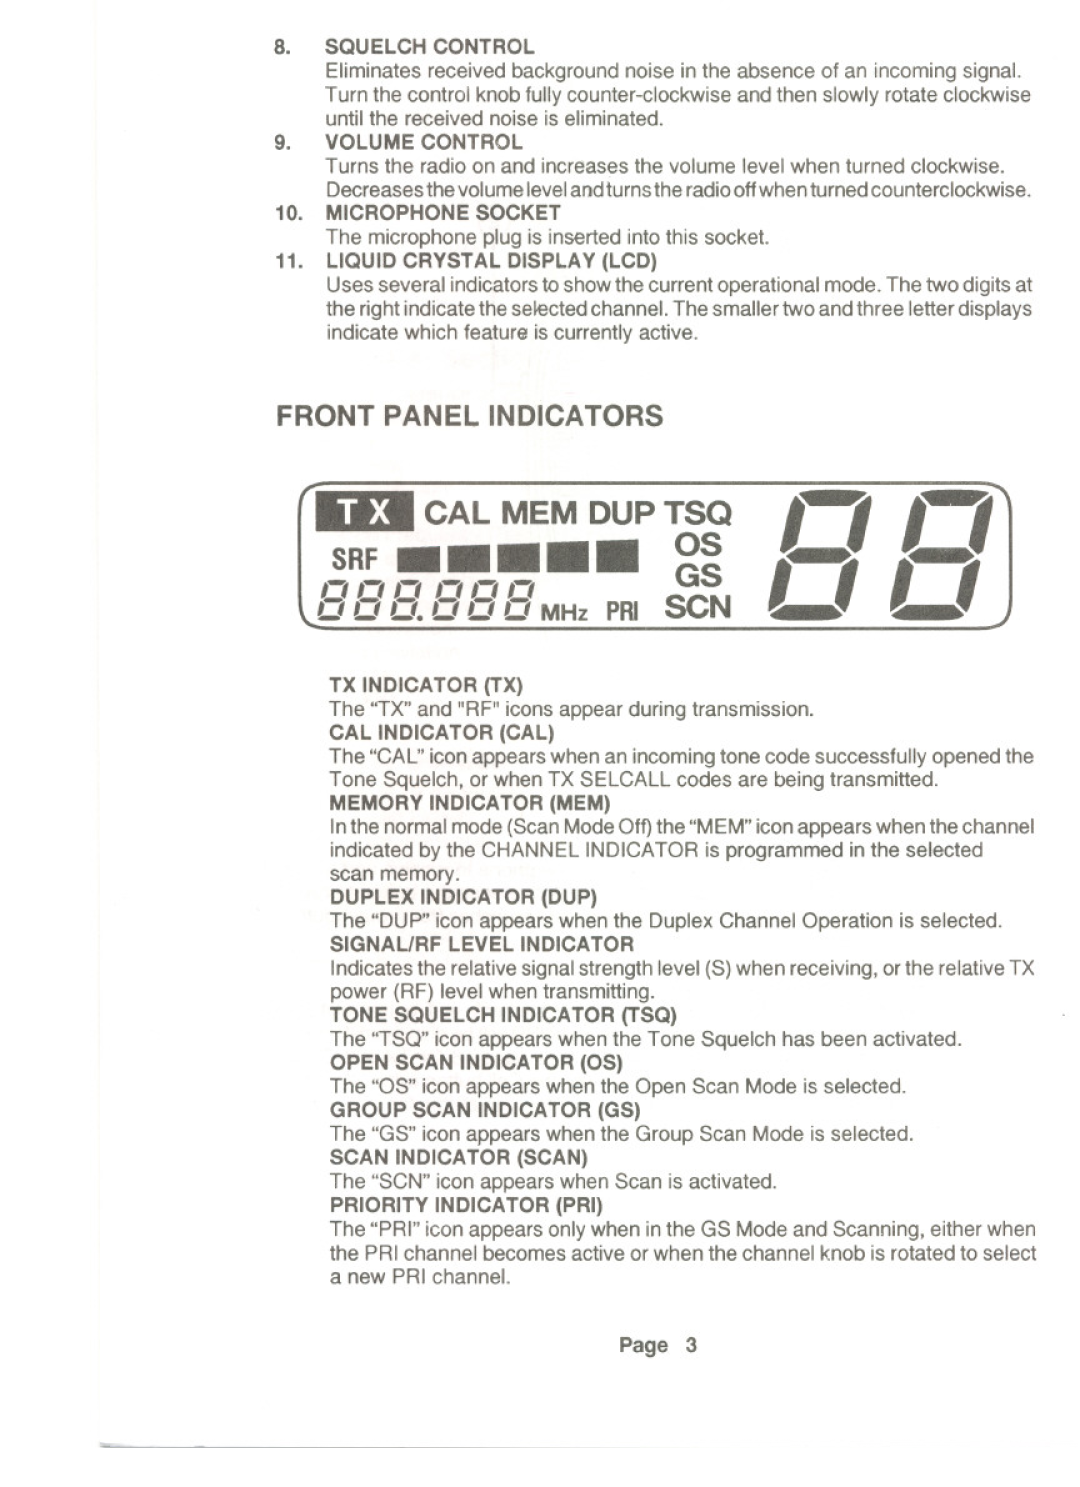 Uniden UH-099 owner manual ffffff GS, Front Panel Indicators, Volumecontrol, SRF ...11111 OS, IJ3I CAL MEM DUP TSQ 